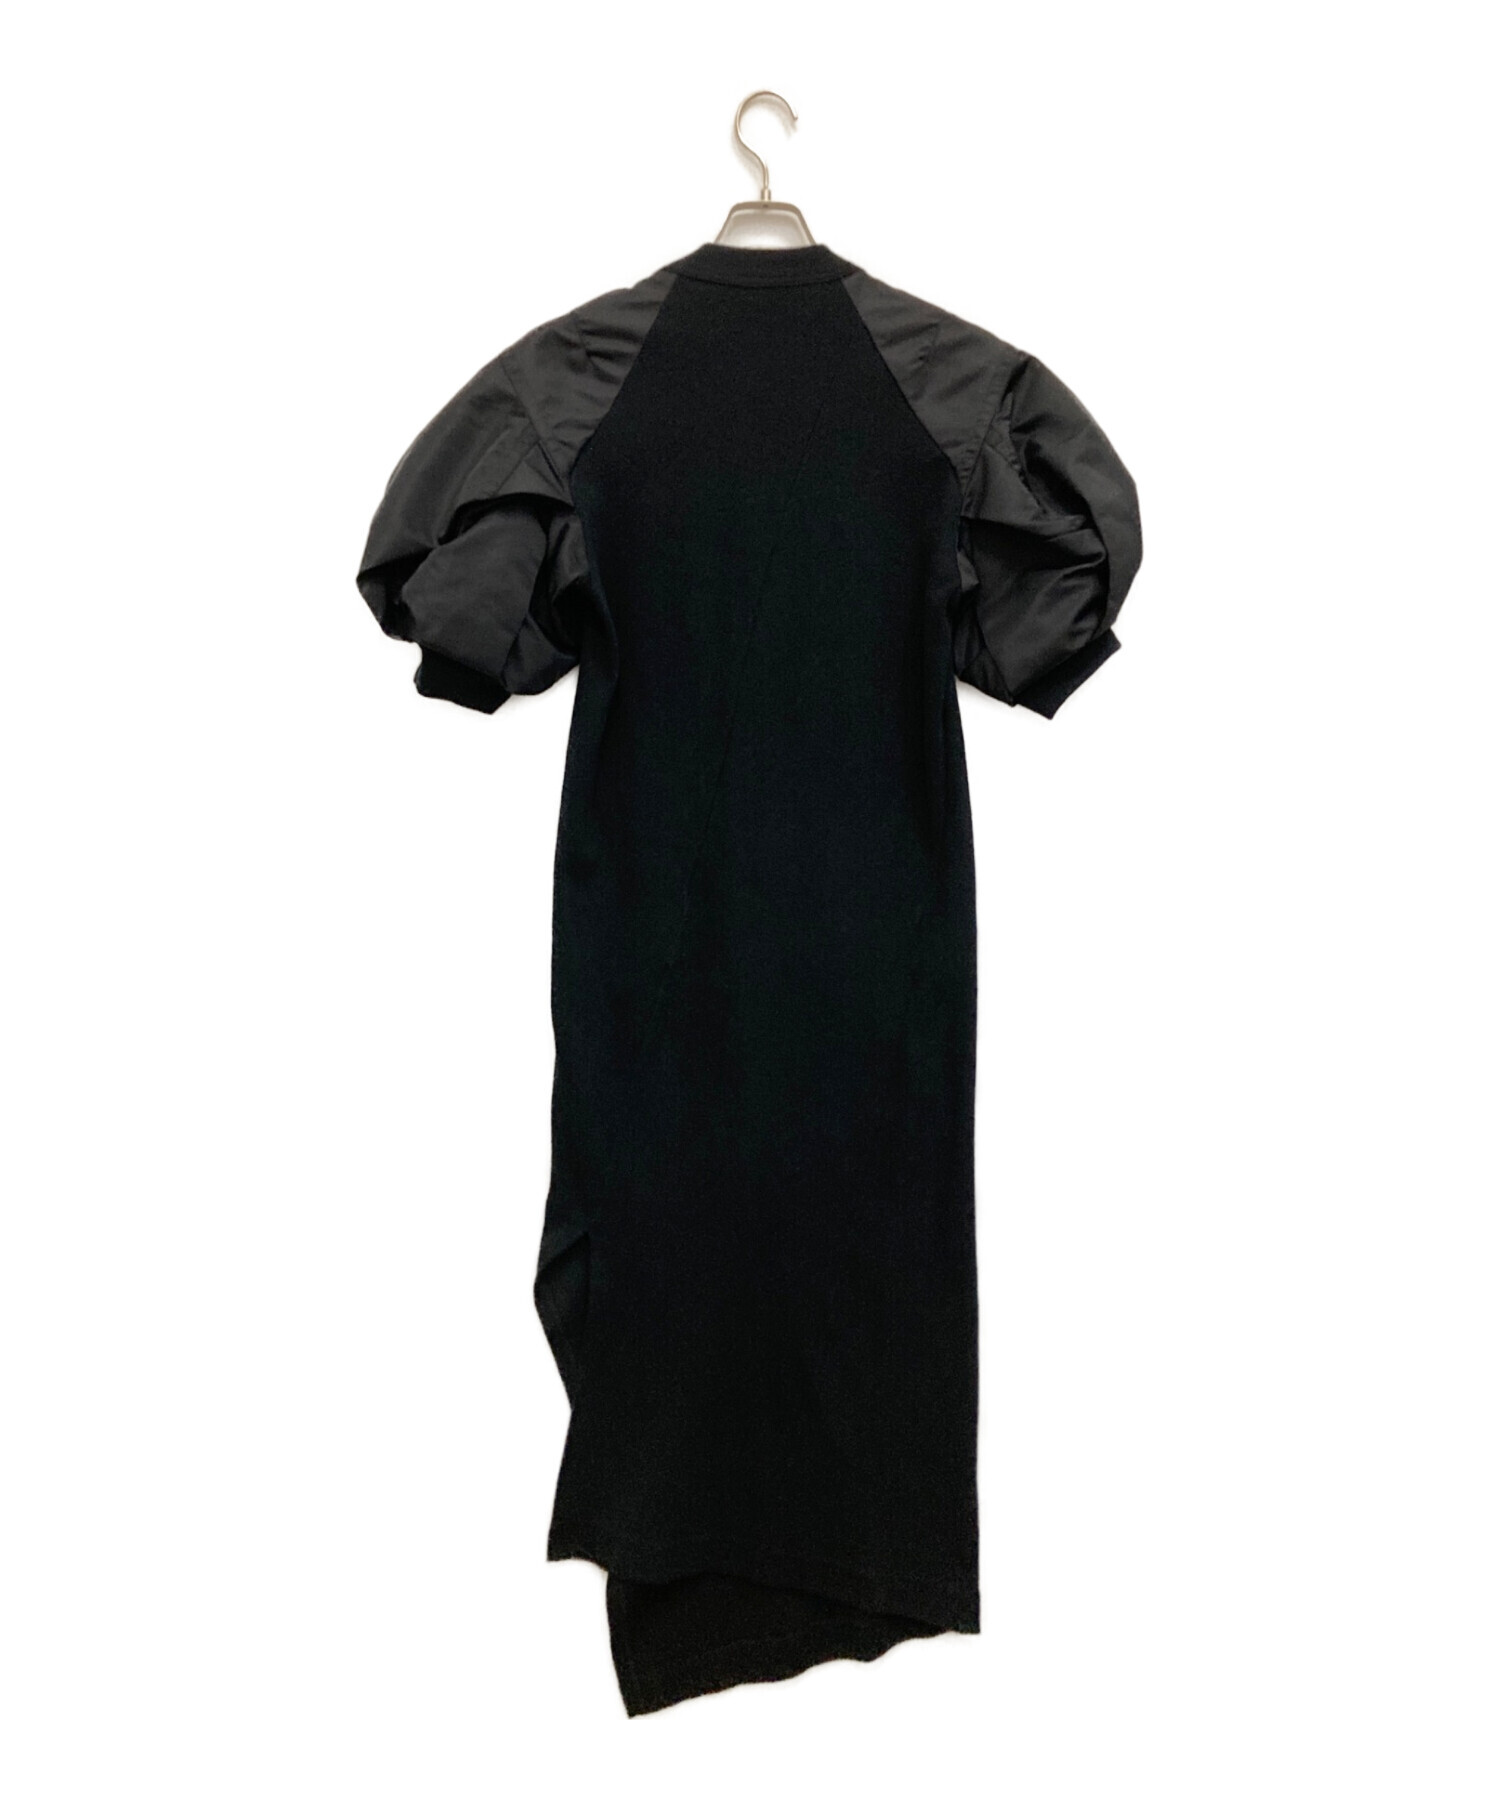 サカイ ドレス シャツワンピース レイヤード スウェット アシンメトリー M 黒約60cm総丈